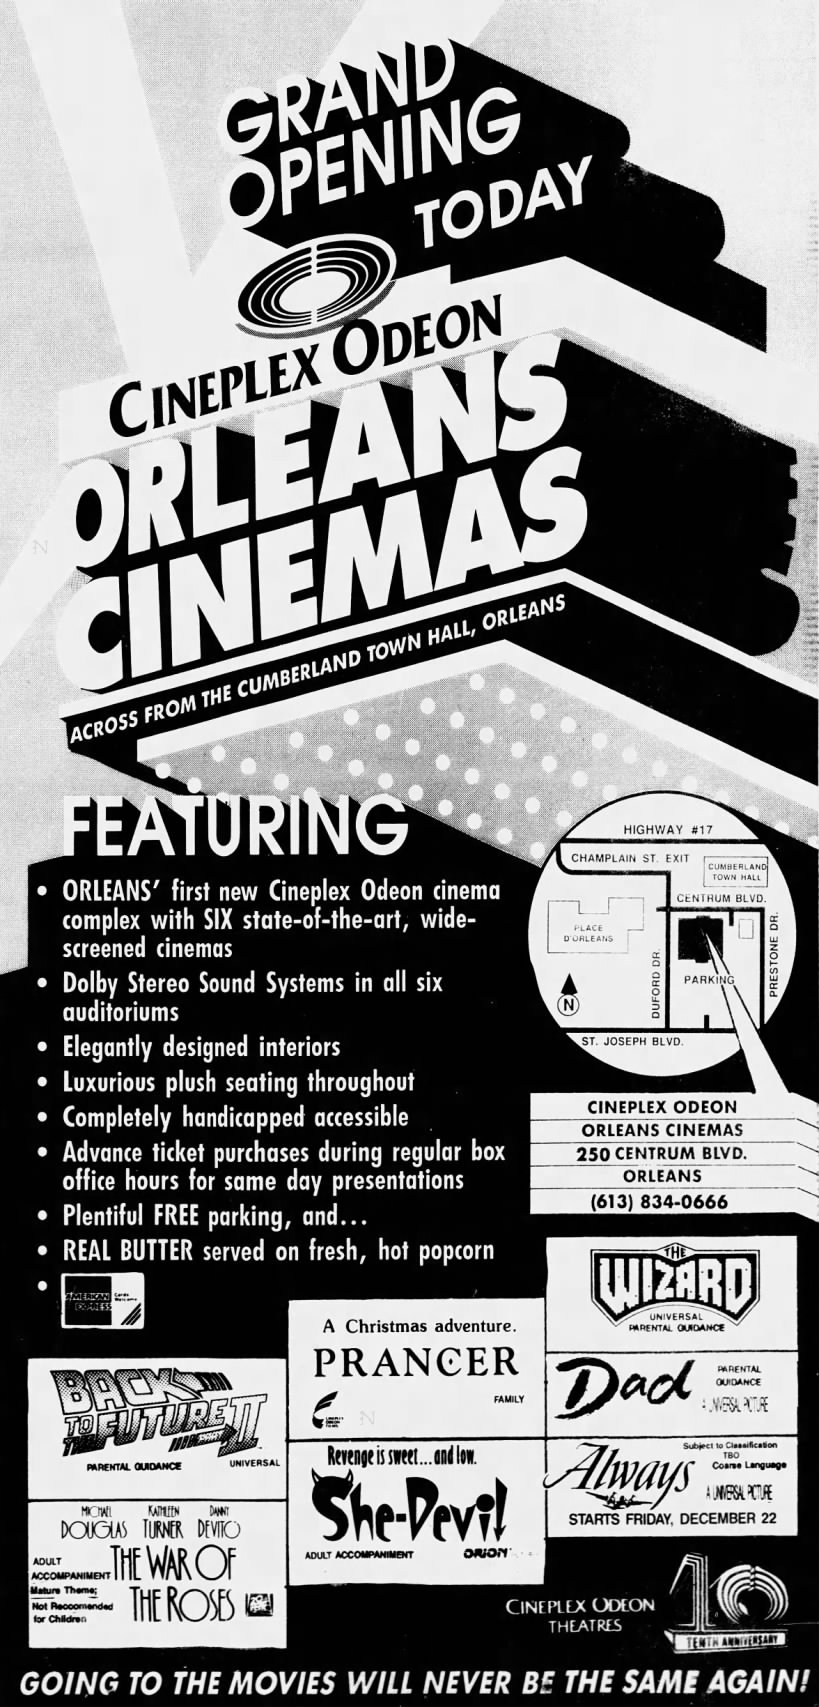 Cineplex Odeon Orleans opening